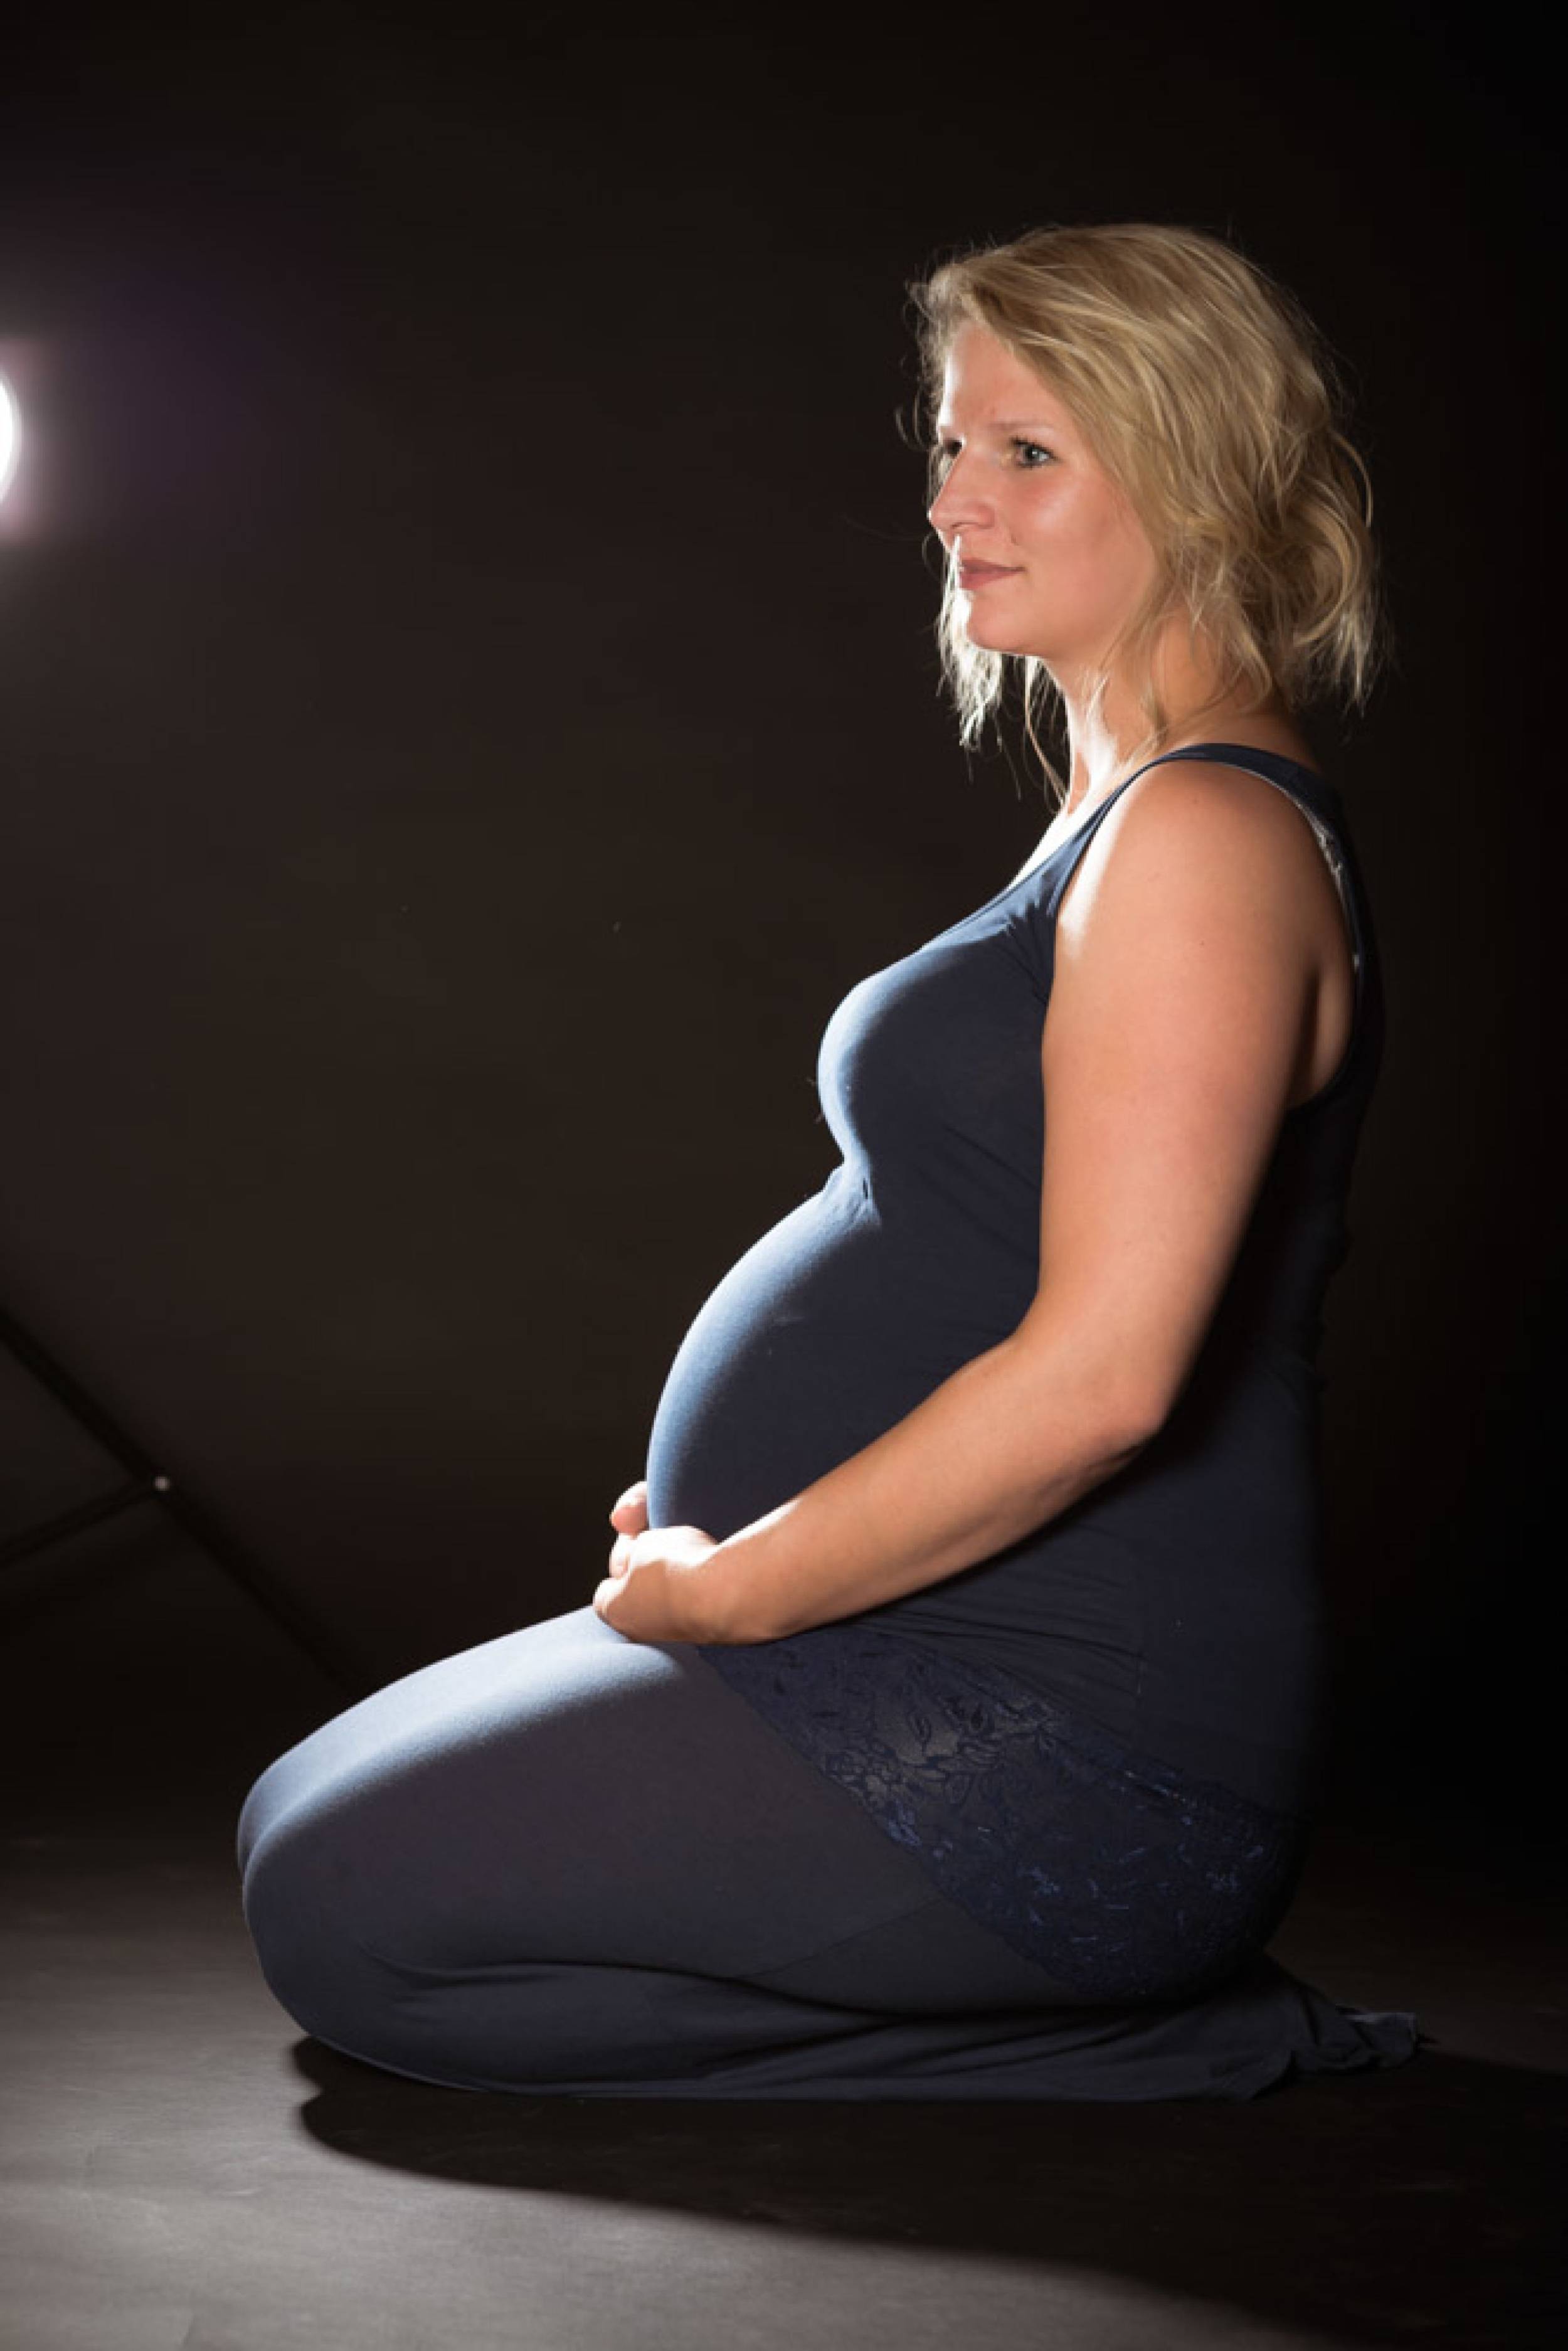 zwangerschapsfotografie-happix-markelo-MVDK20140908_0025_CKjJrz4fl_EGHImkS3wA-.jpg